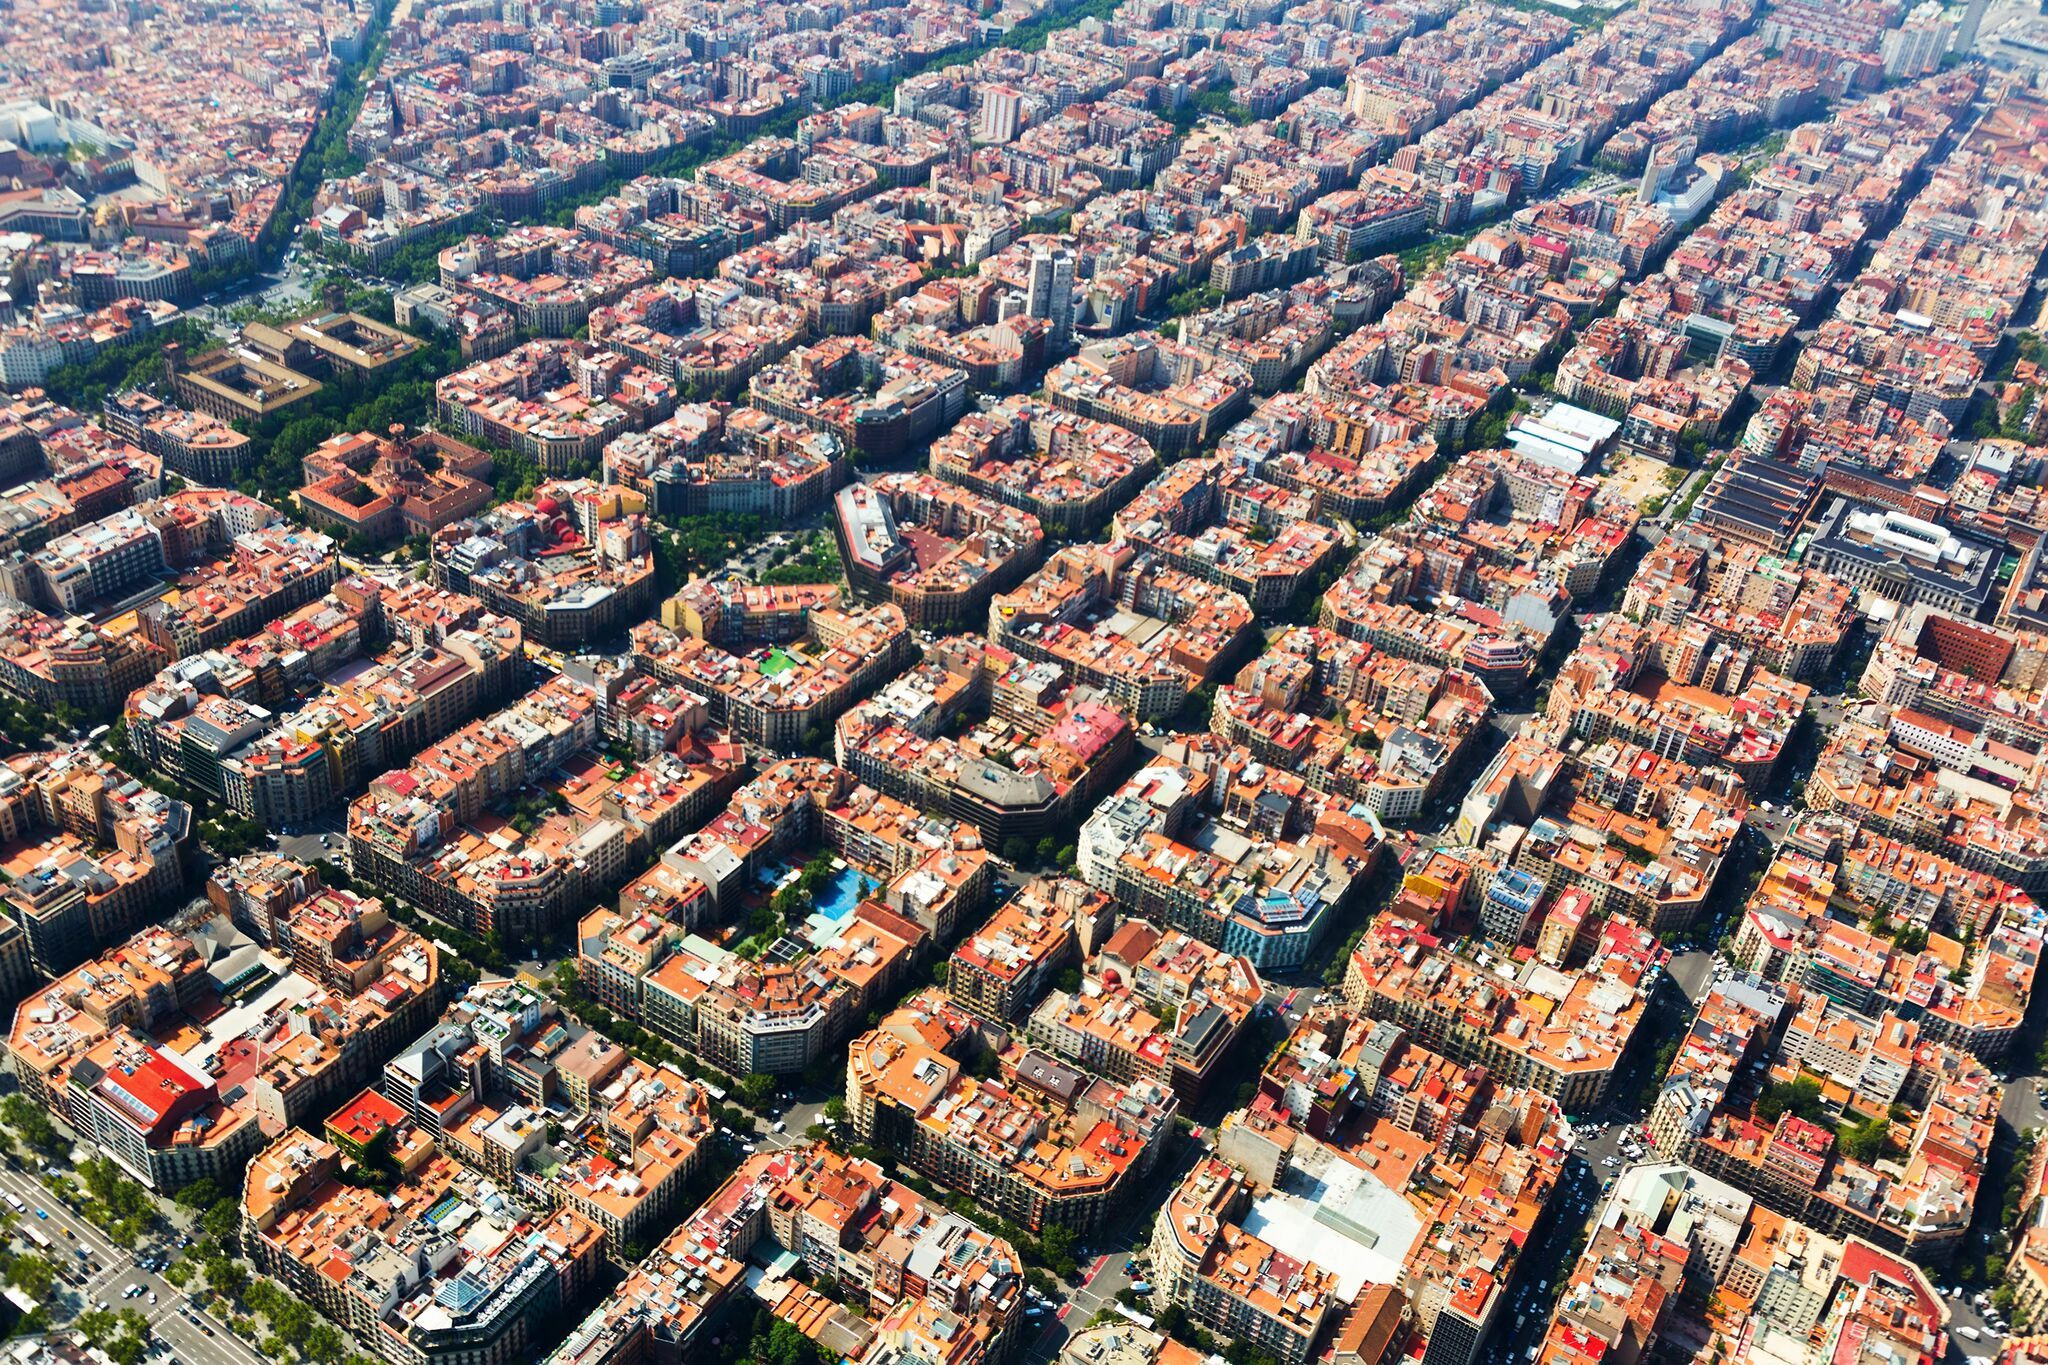 El distrito del Eixample de Barcelona ocupa la parte central de la ciudad y fue diseñado por Ildefons Cerdá